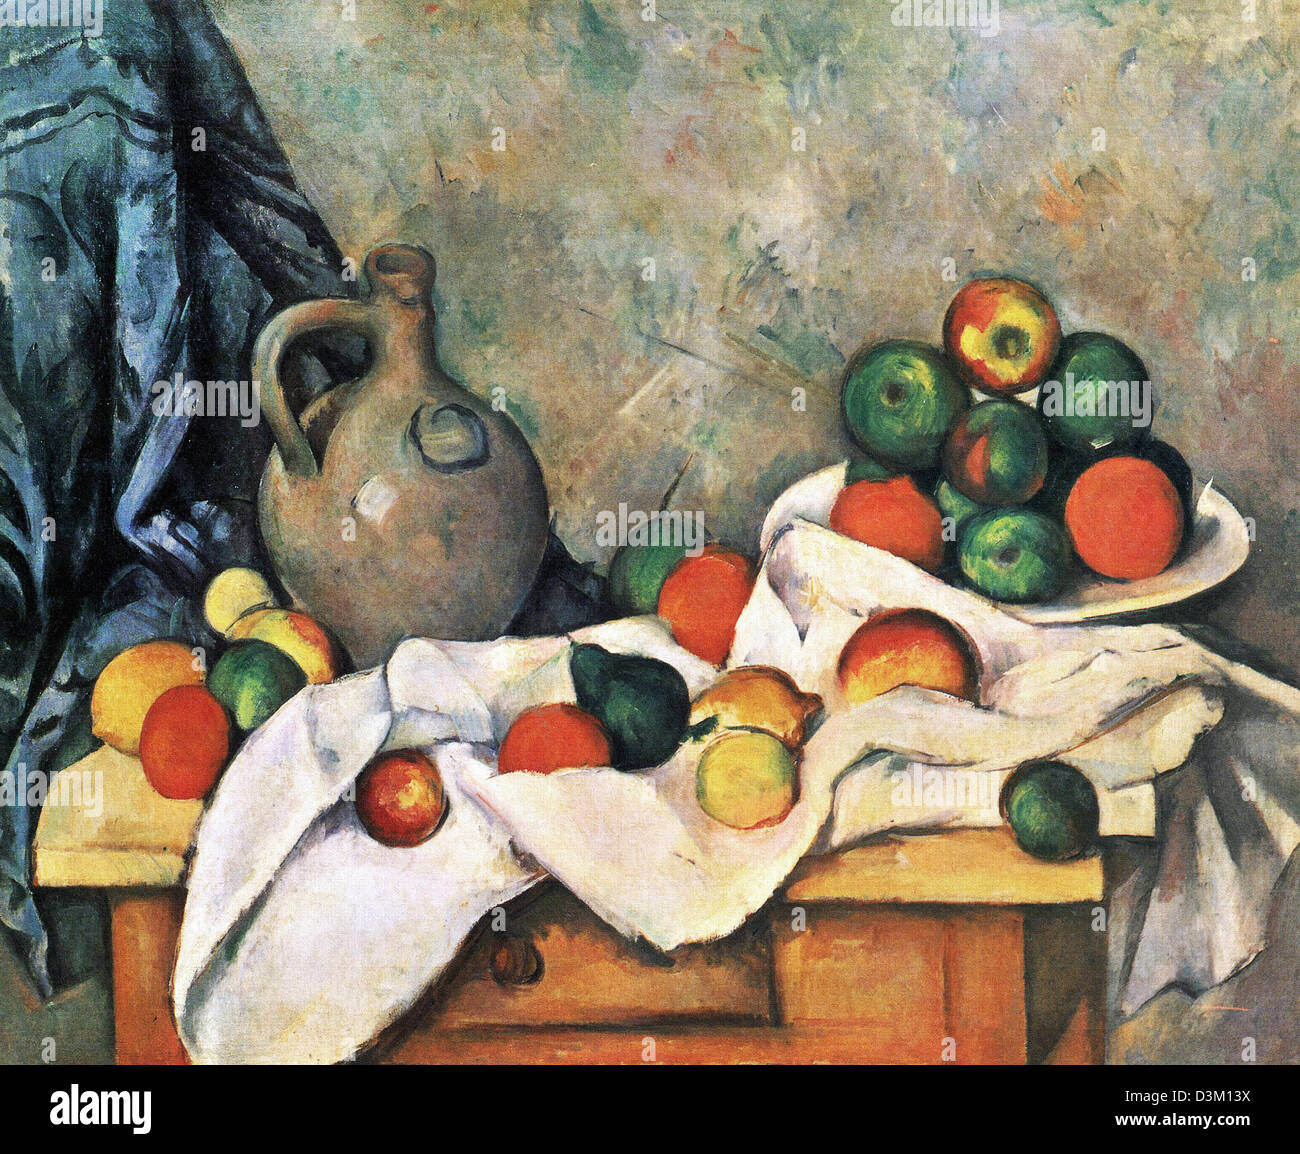 Paul Cézanne, nature morte, draperie, lanceur, et Coupe à fruits 1893-1894 Huile sur toile. Whitney Museum of American Art, New York, USA Banque D'Images